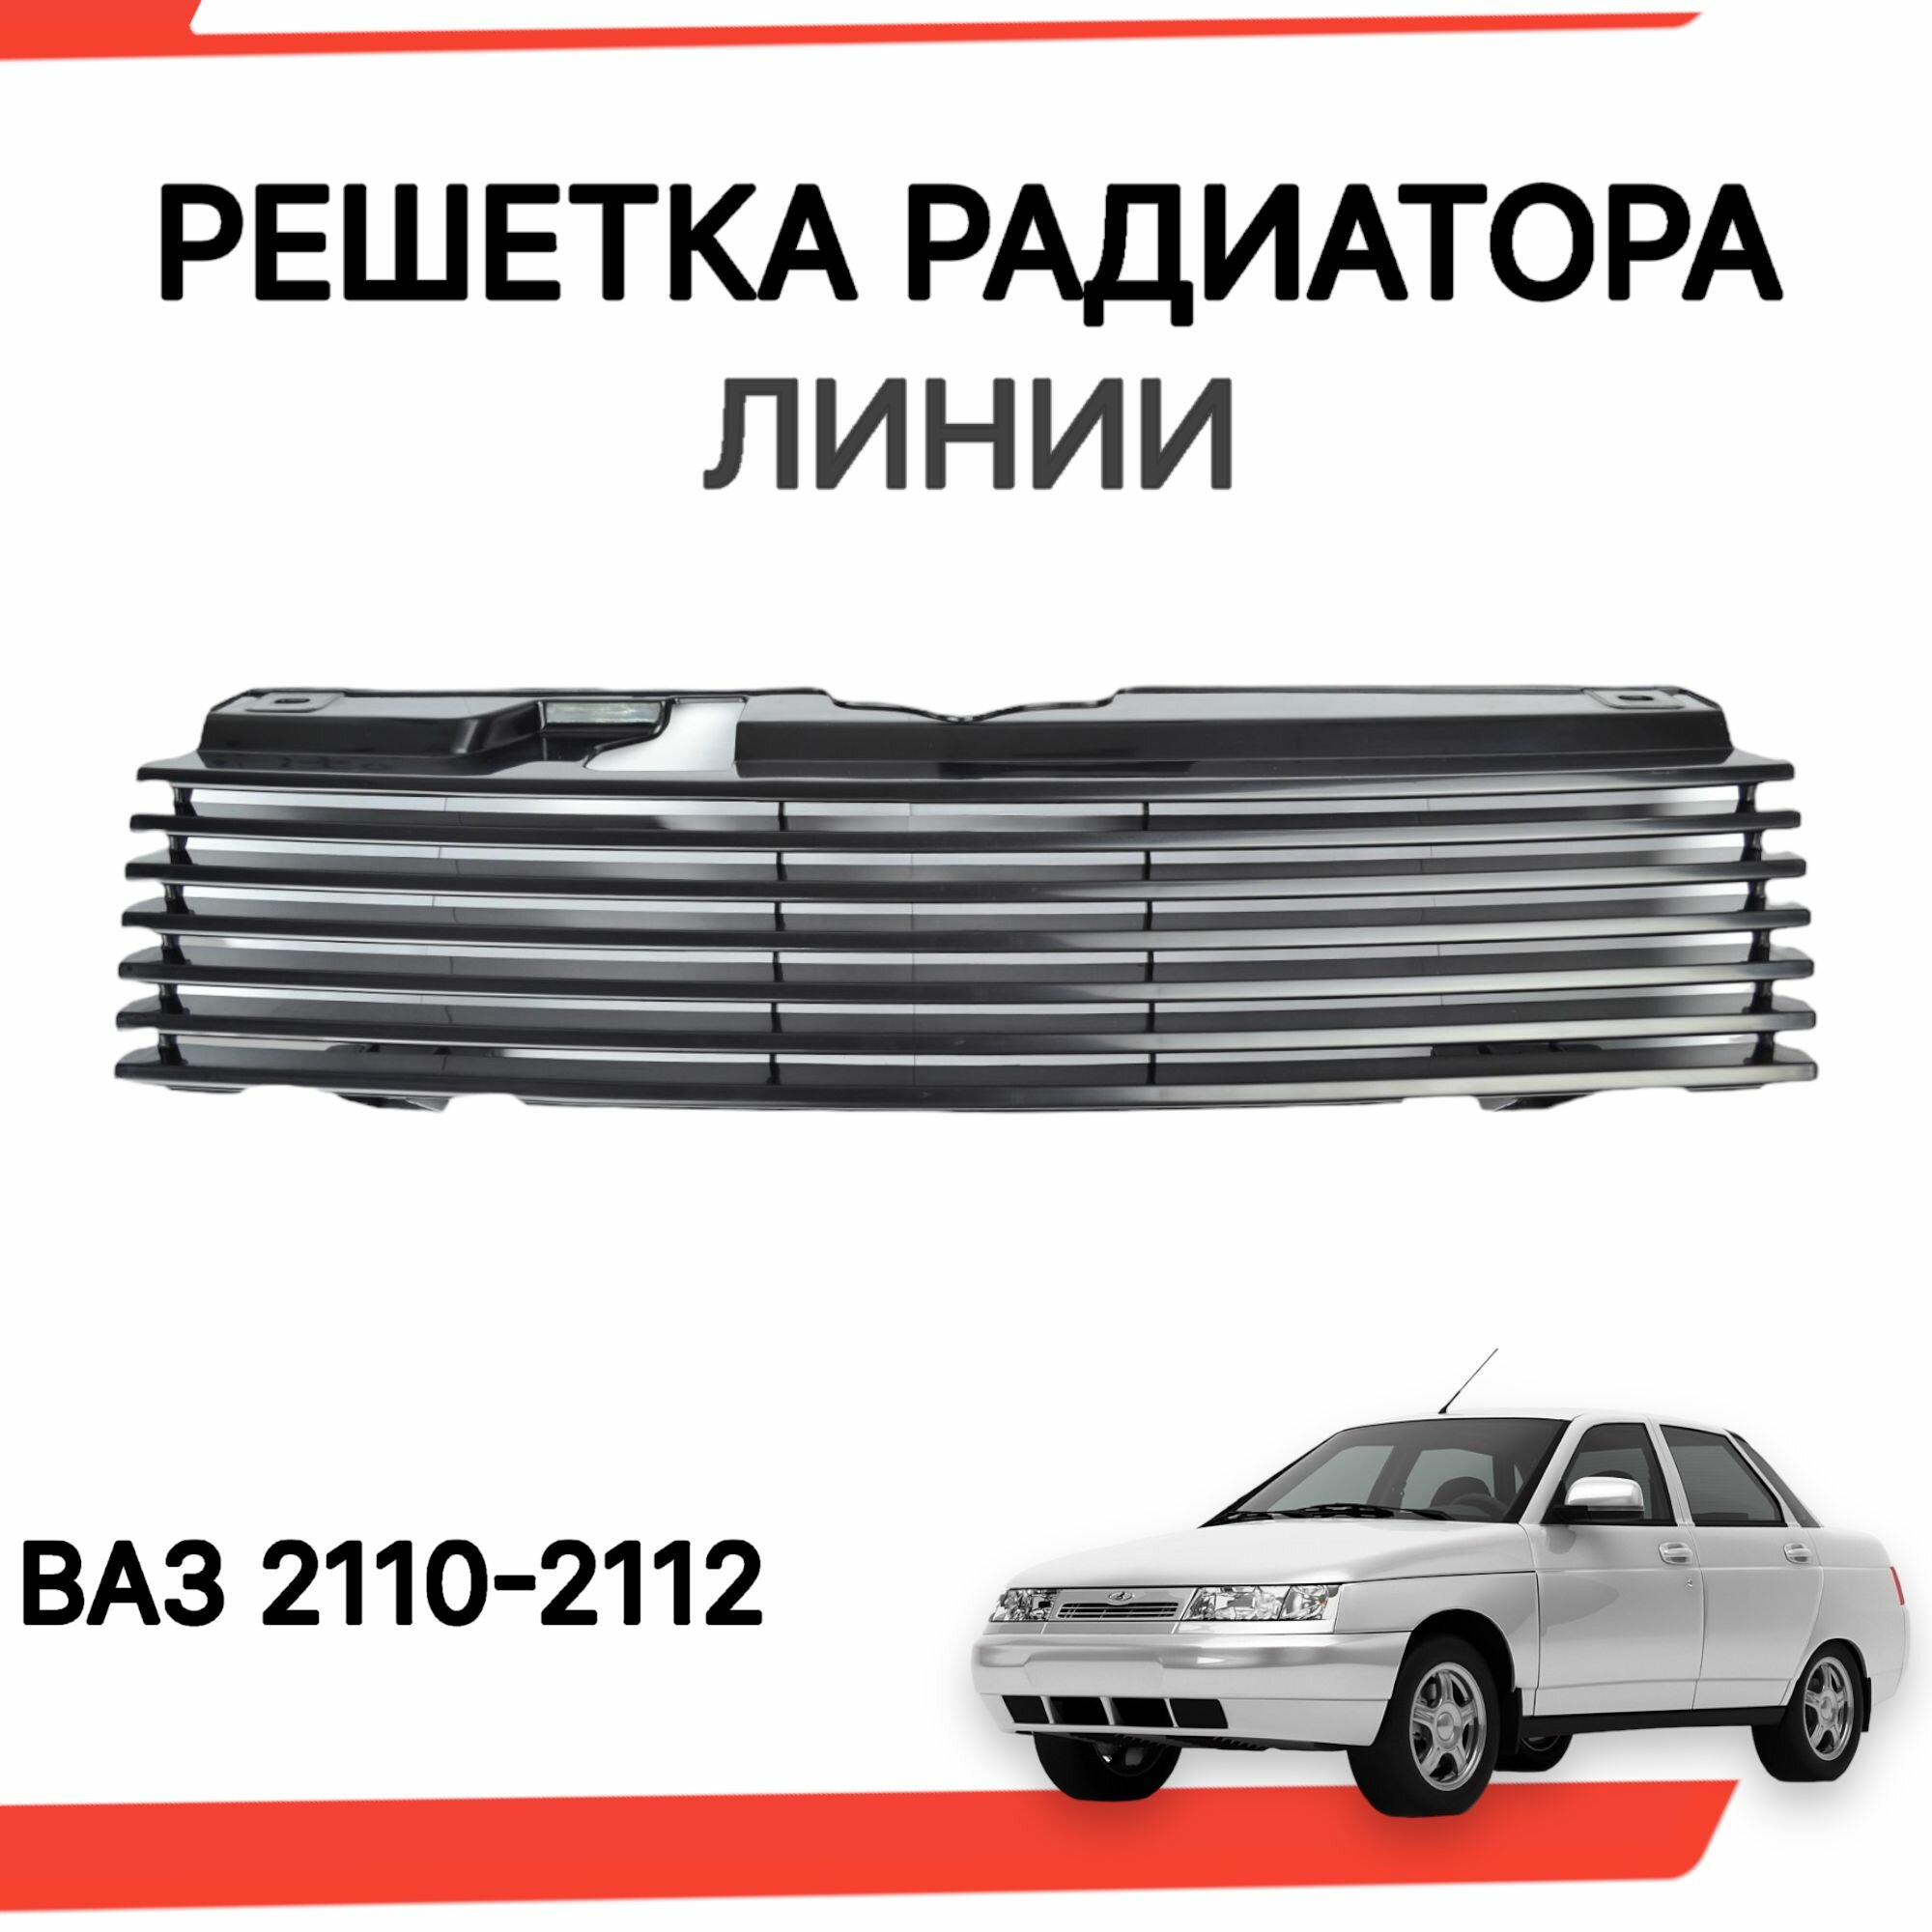 Решетка радиатора "Линии" для ВАЗ 2110 2111 2112